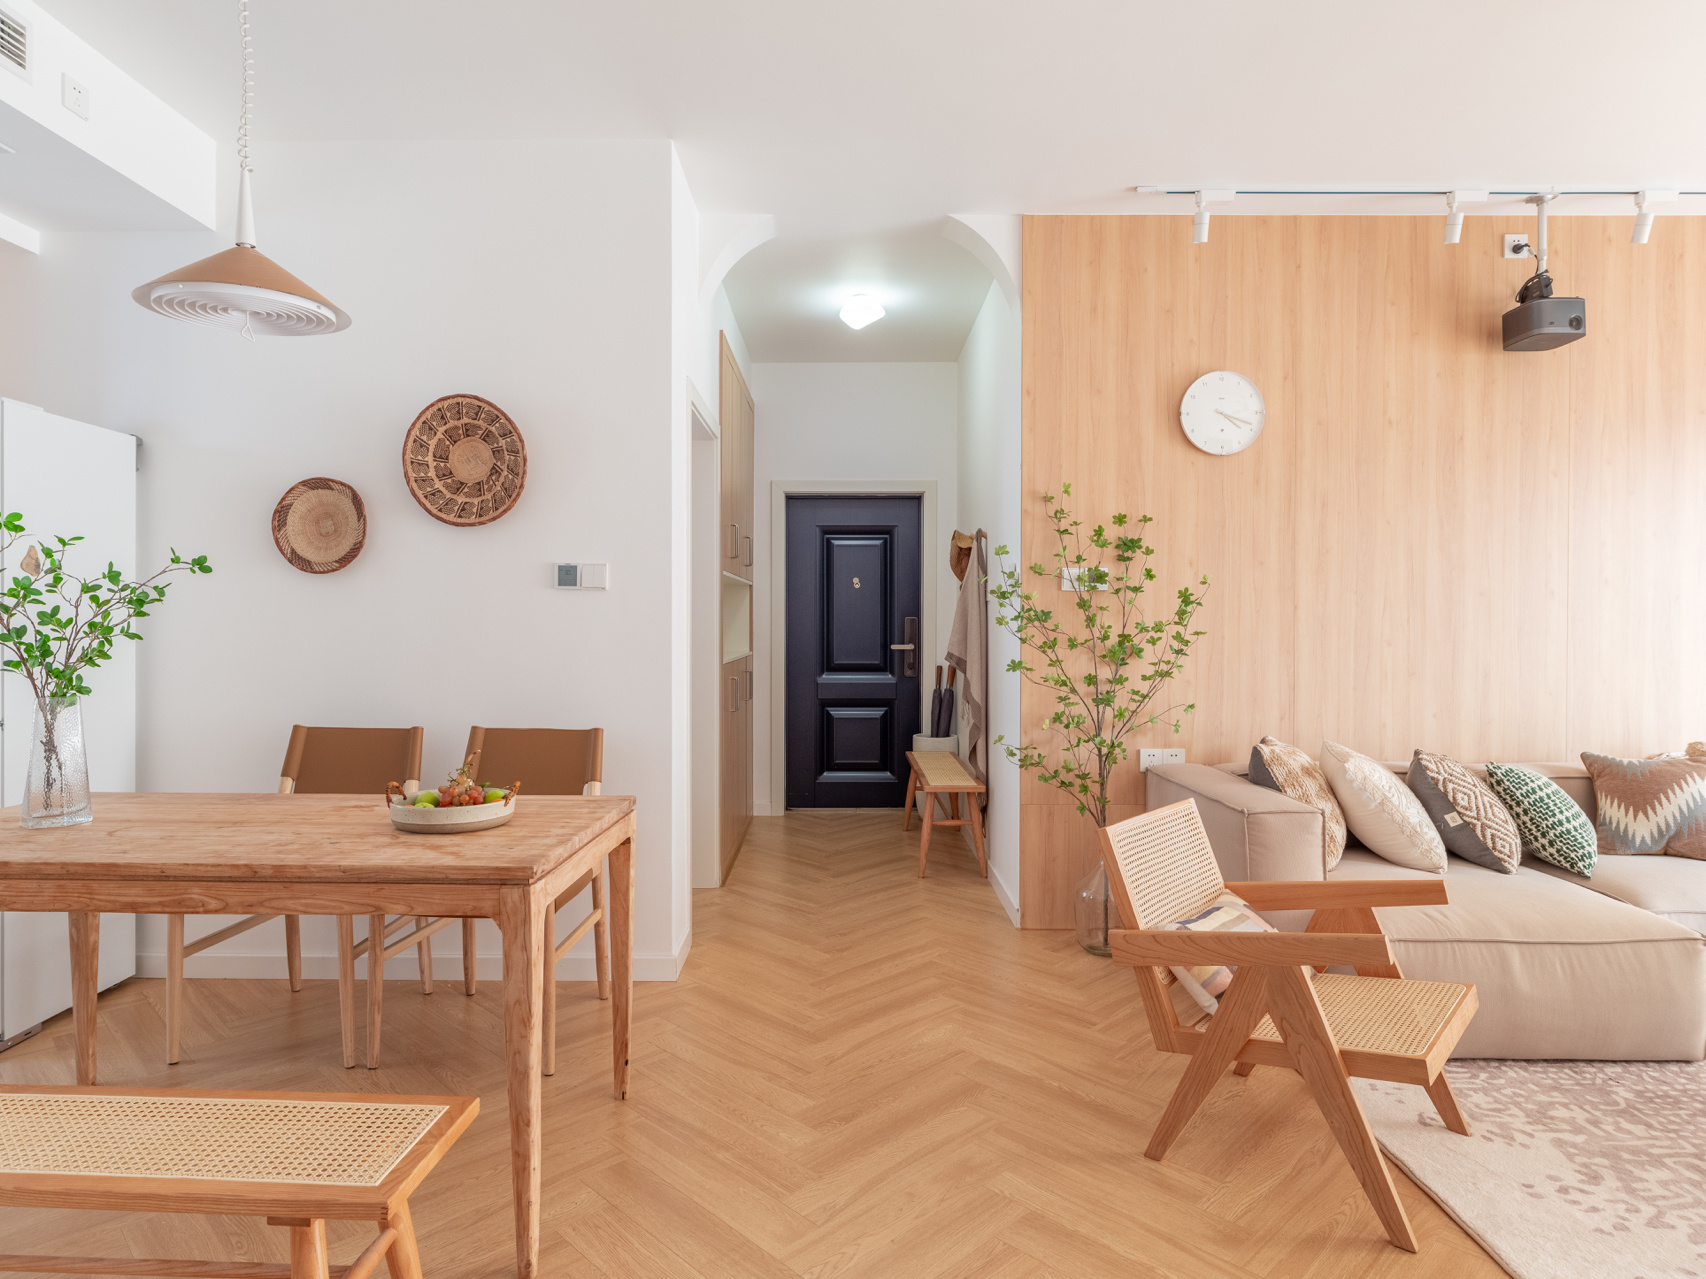 Thích mê căn hộ nhỏ phong cách nội thất Nhật Bản, tuy đơn giản nhưng lại ấm áp vô cùng - Ảnh 6.